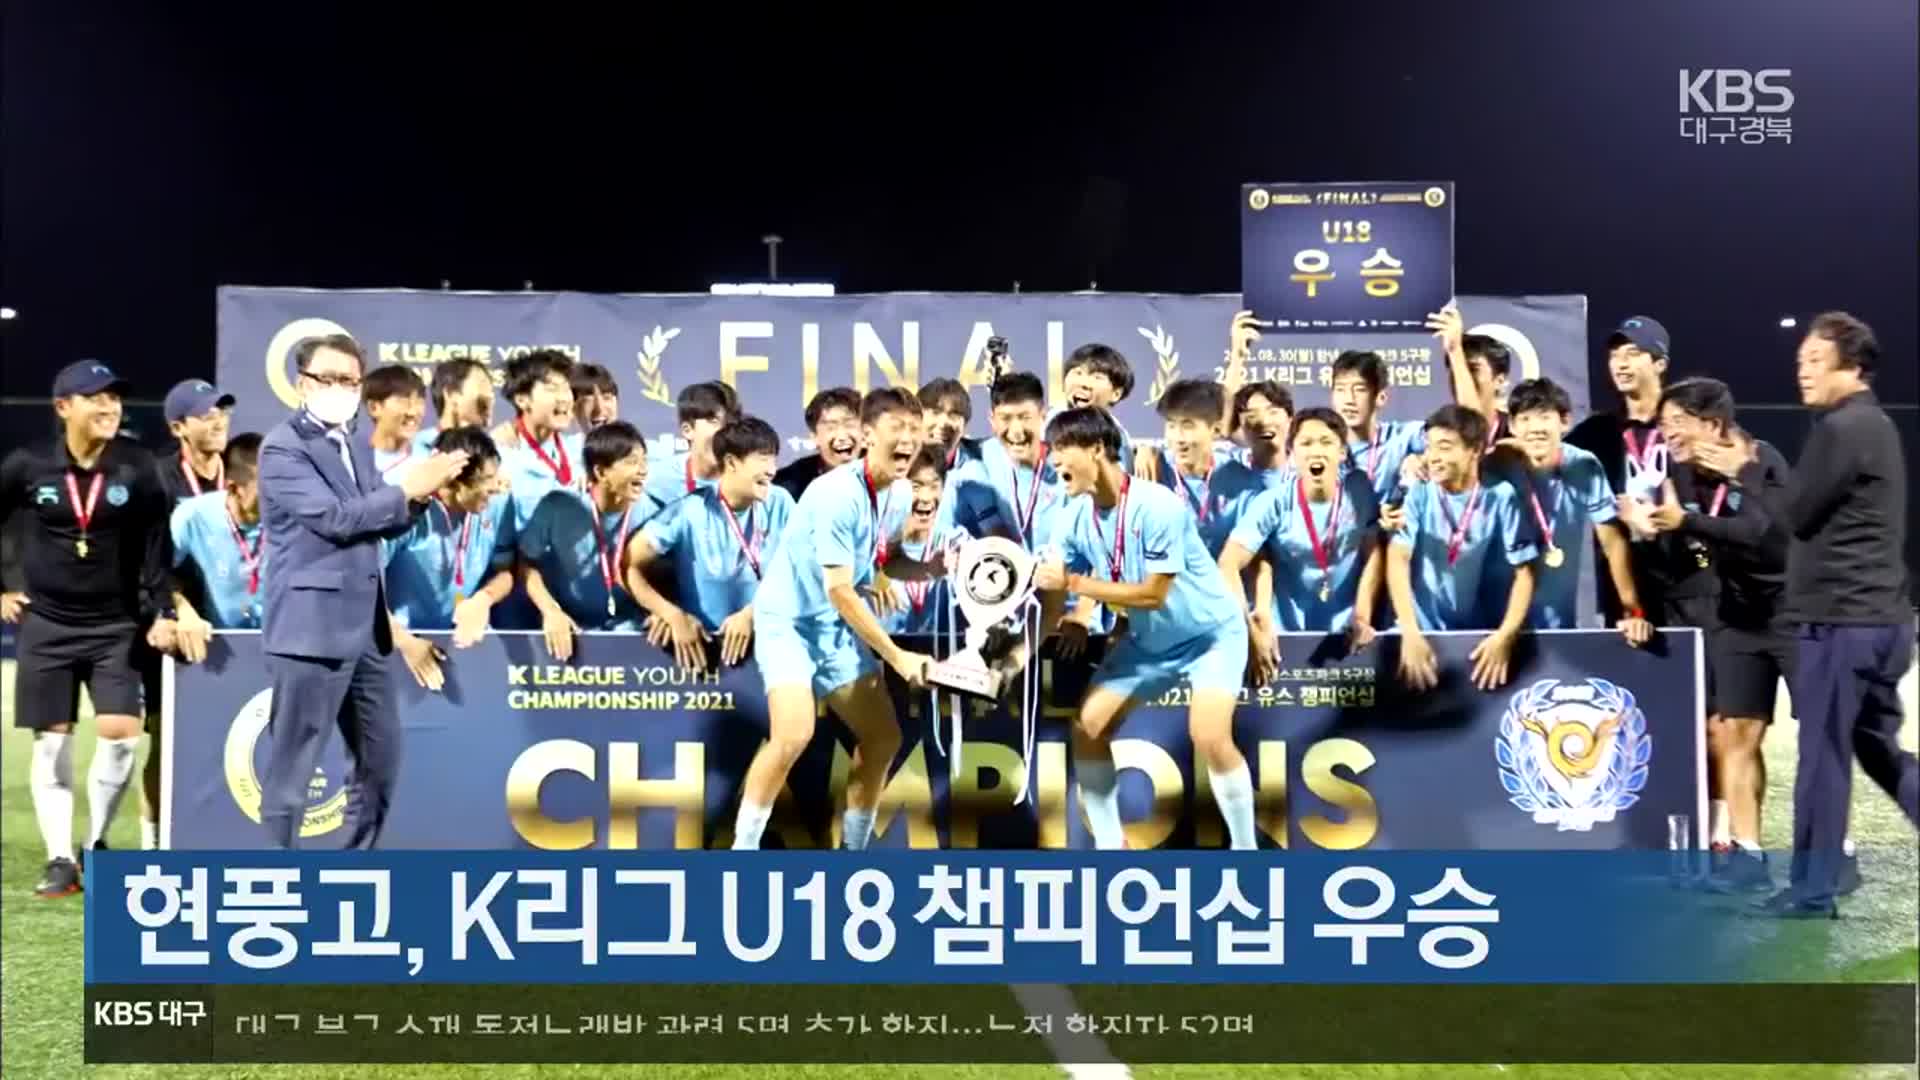 현풍고, K리그 U18 챔피언십 우승